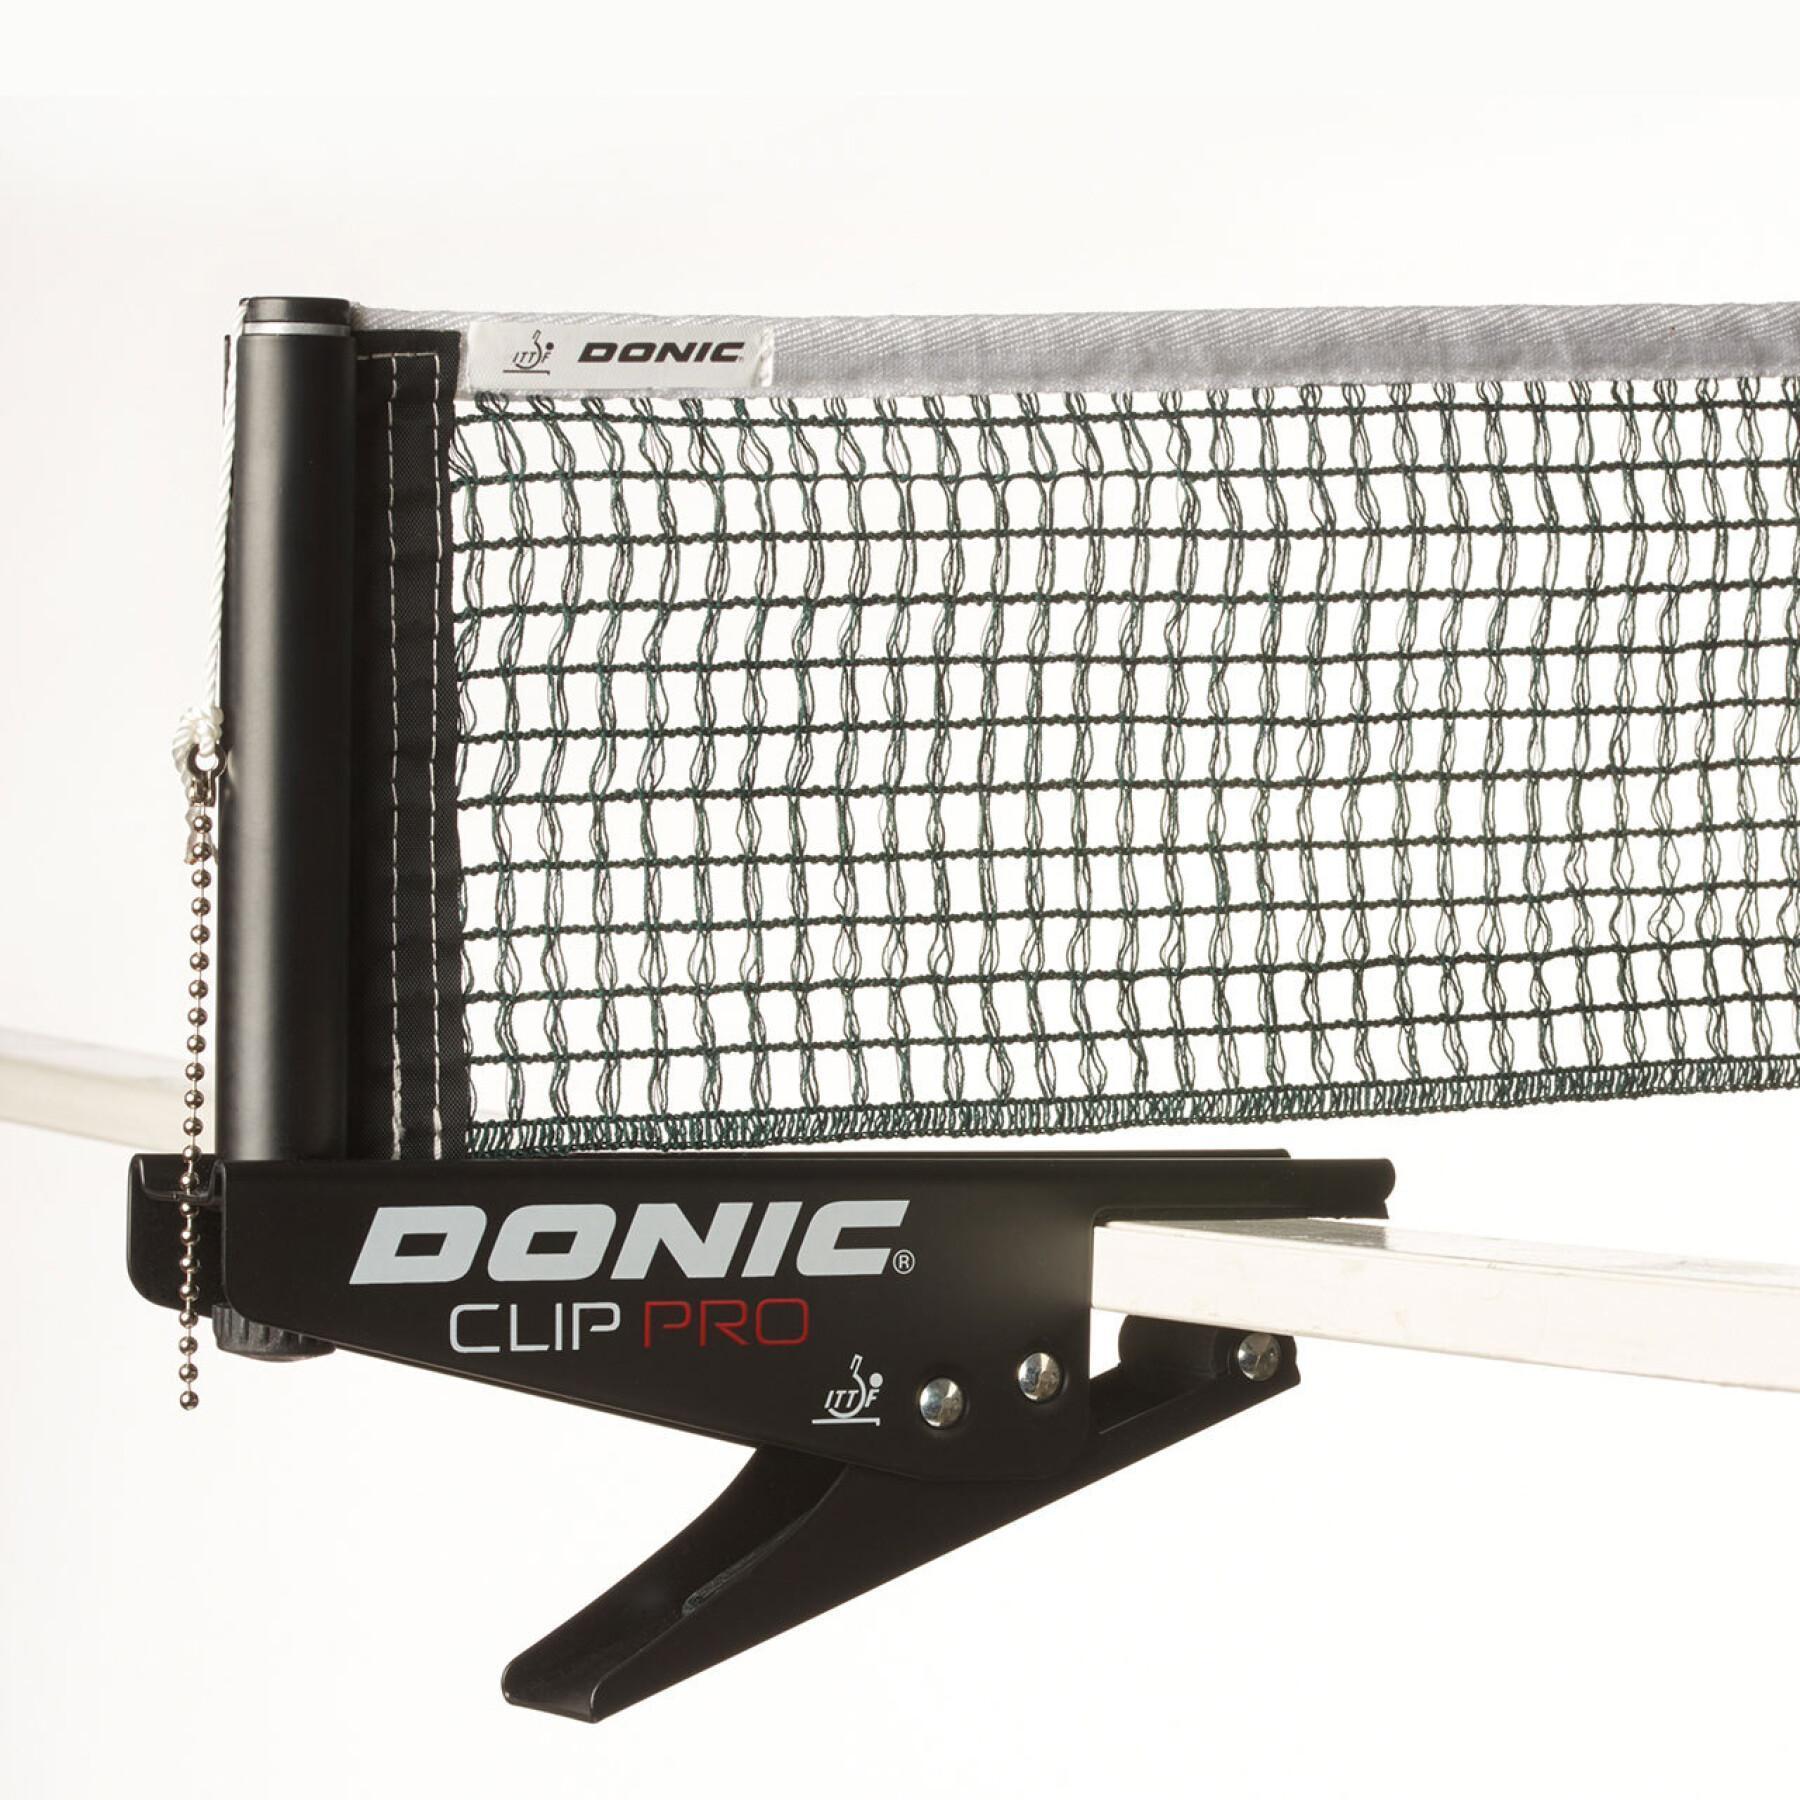 Rete da ping pong e paletti Donic Clip Pro